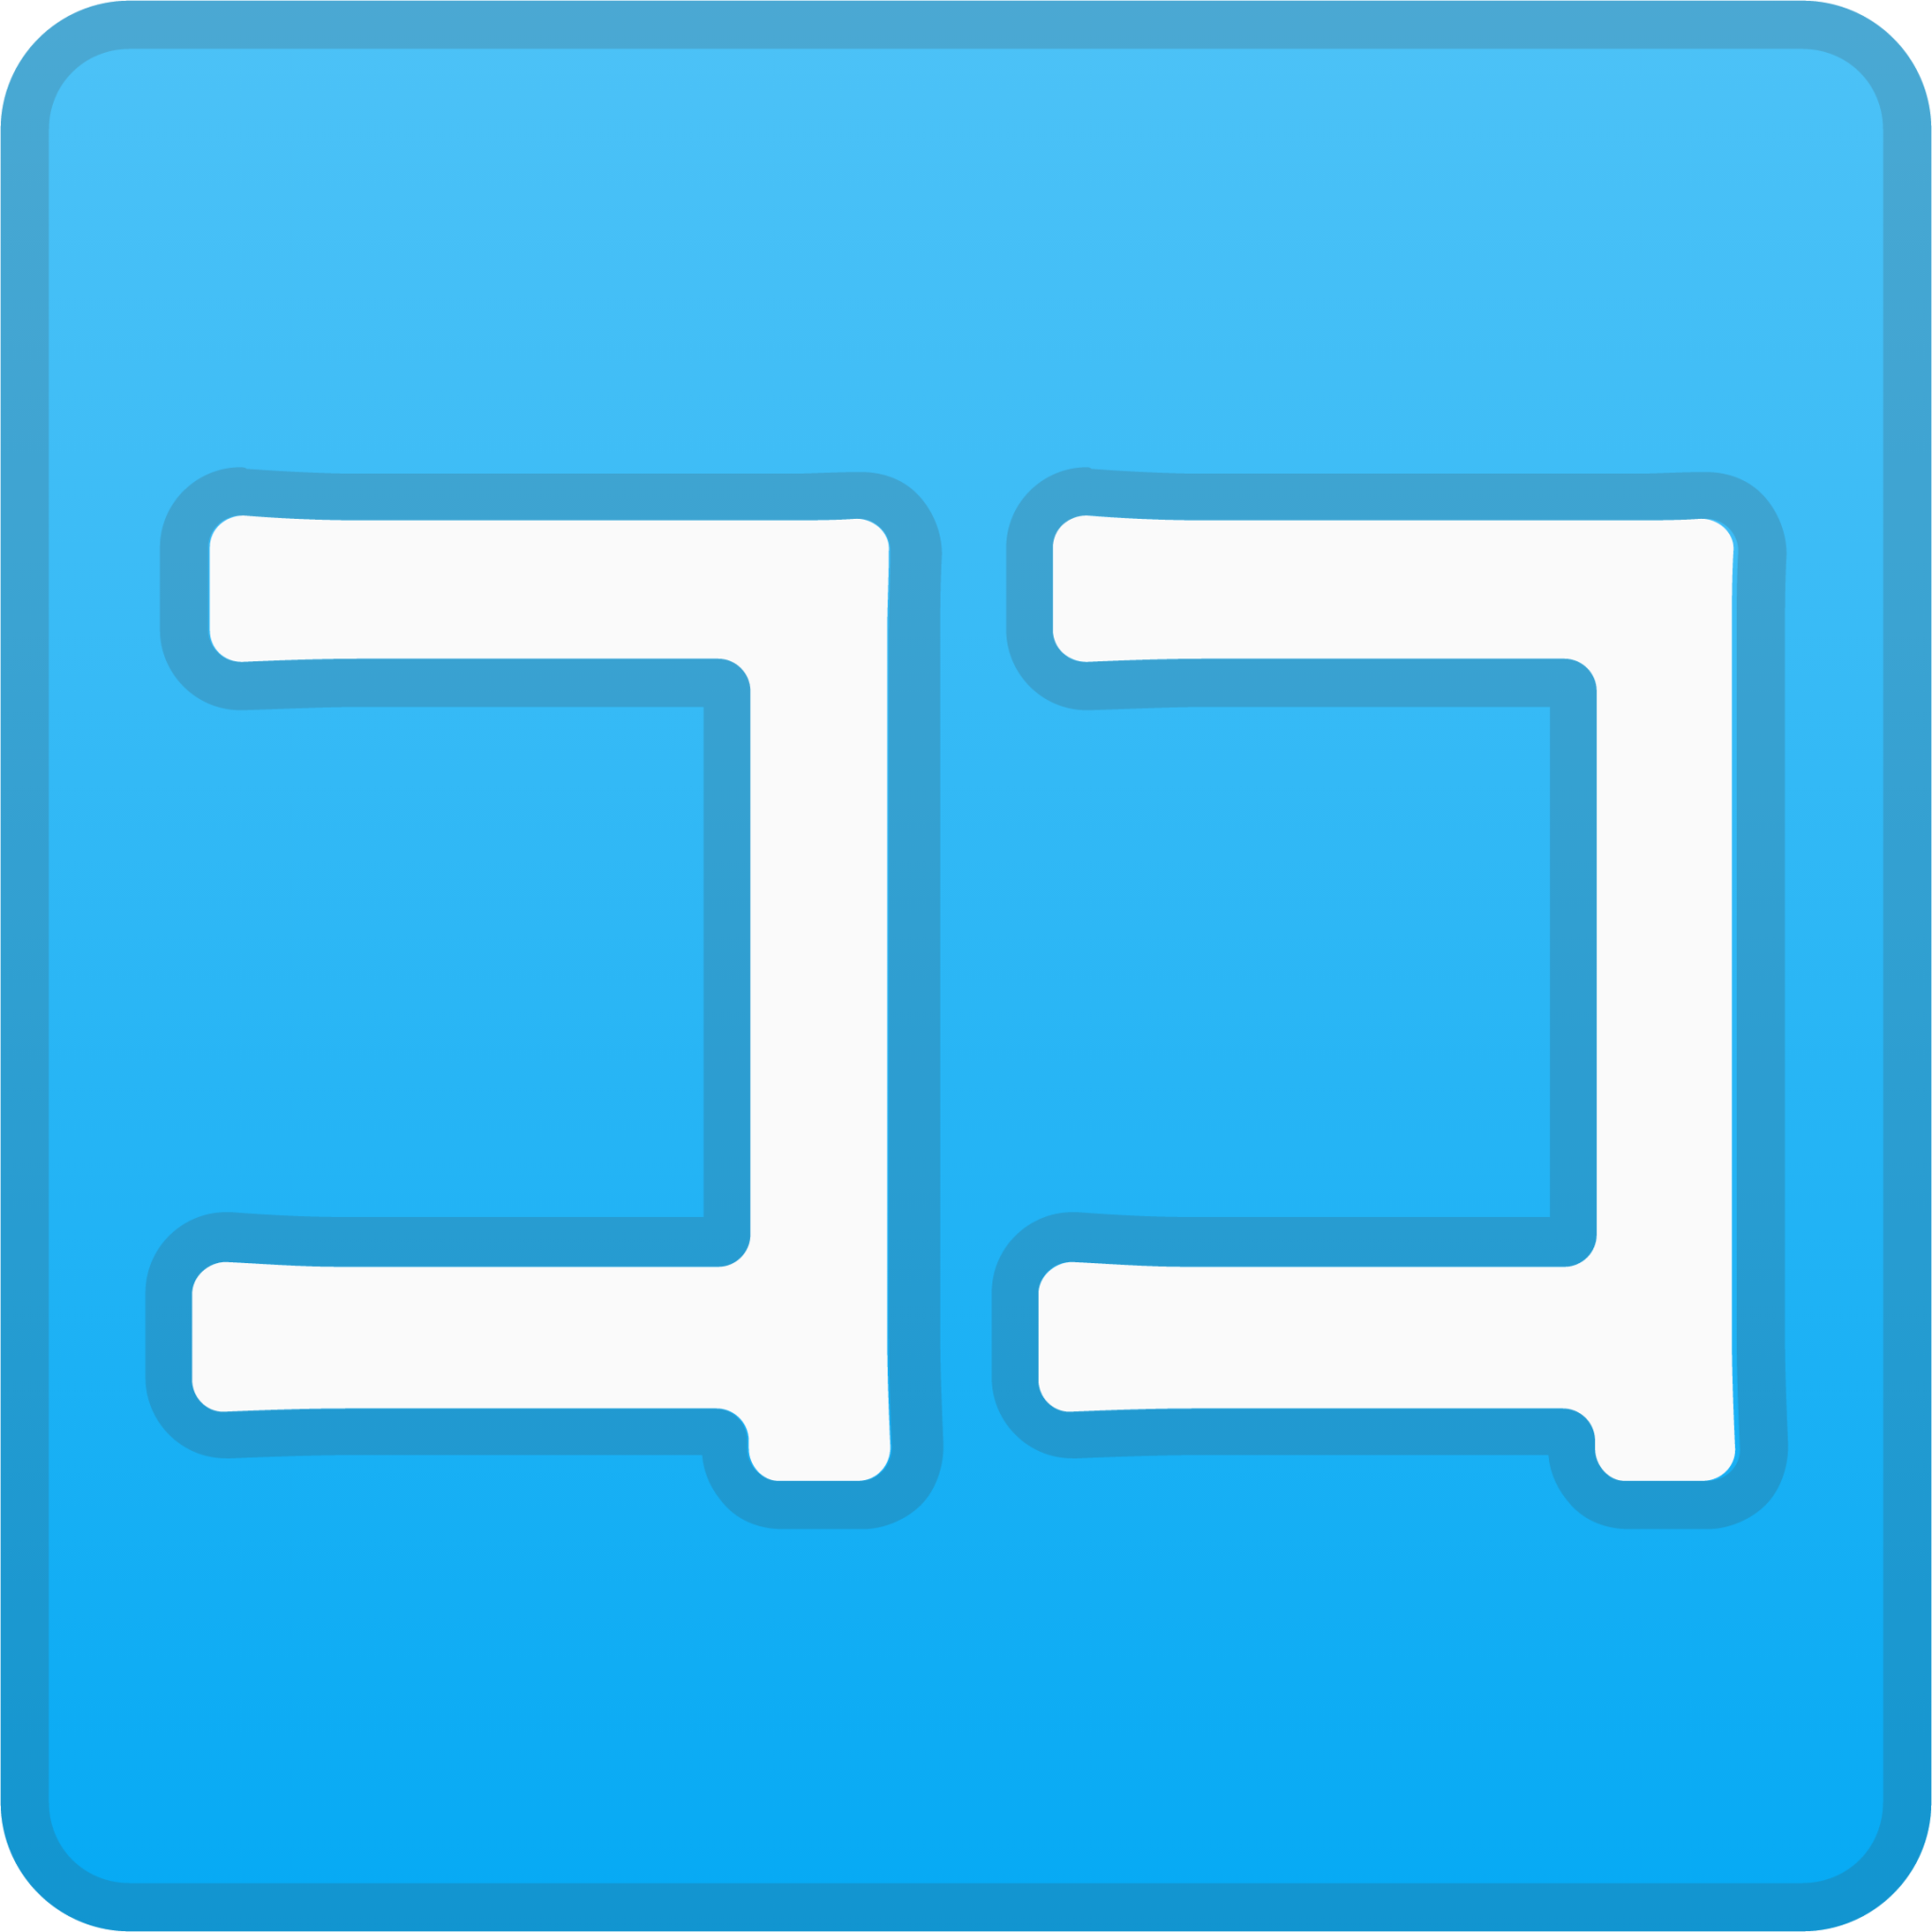 Japanese “here” button emoji